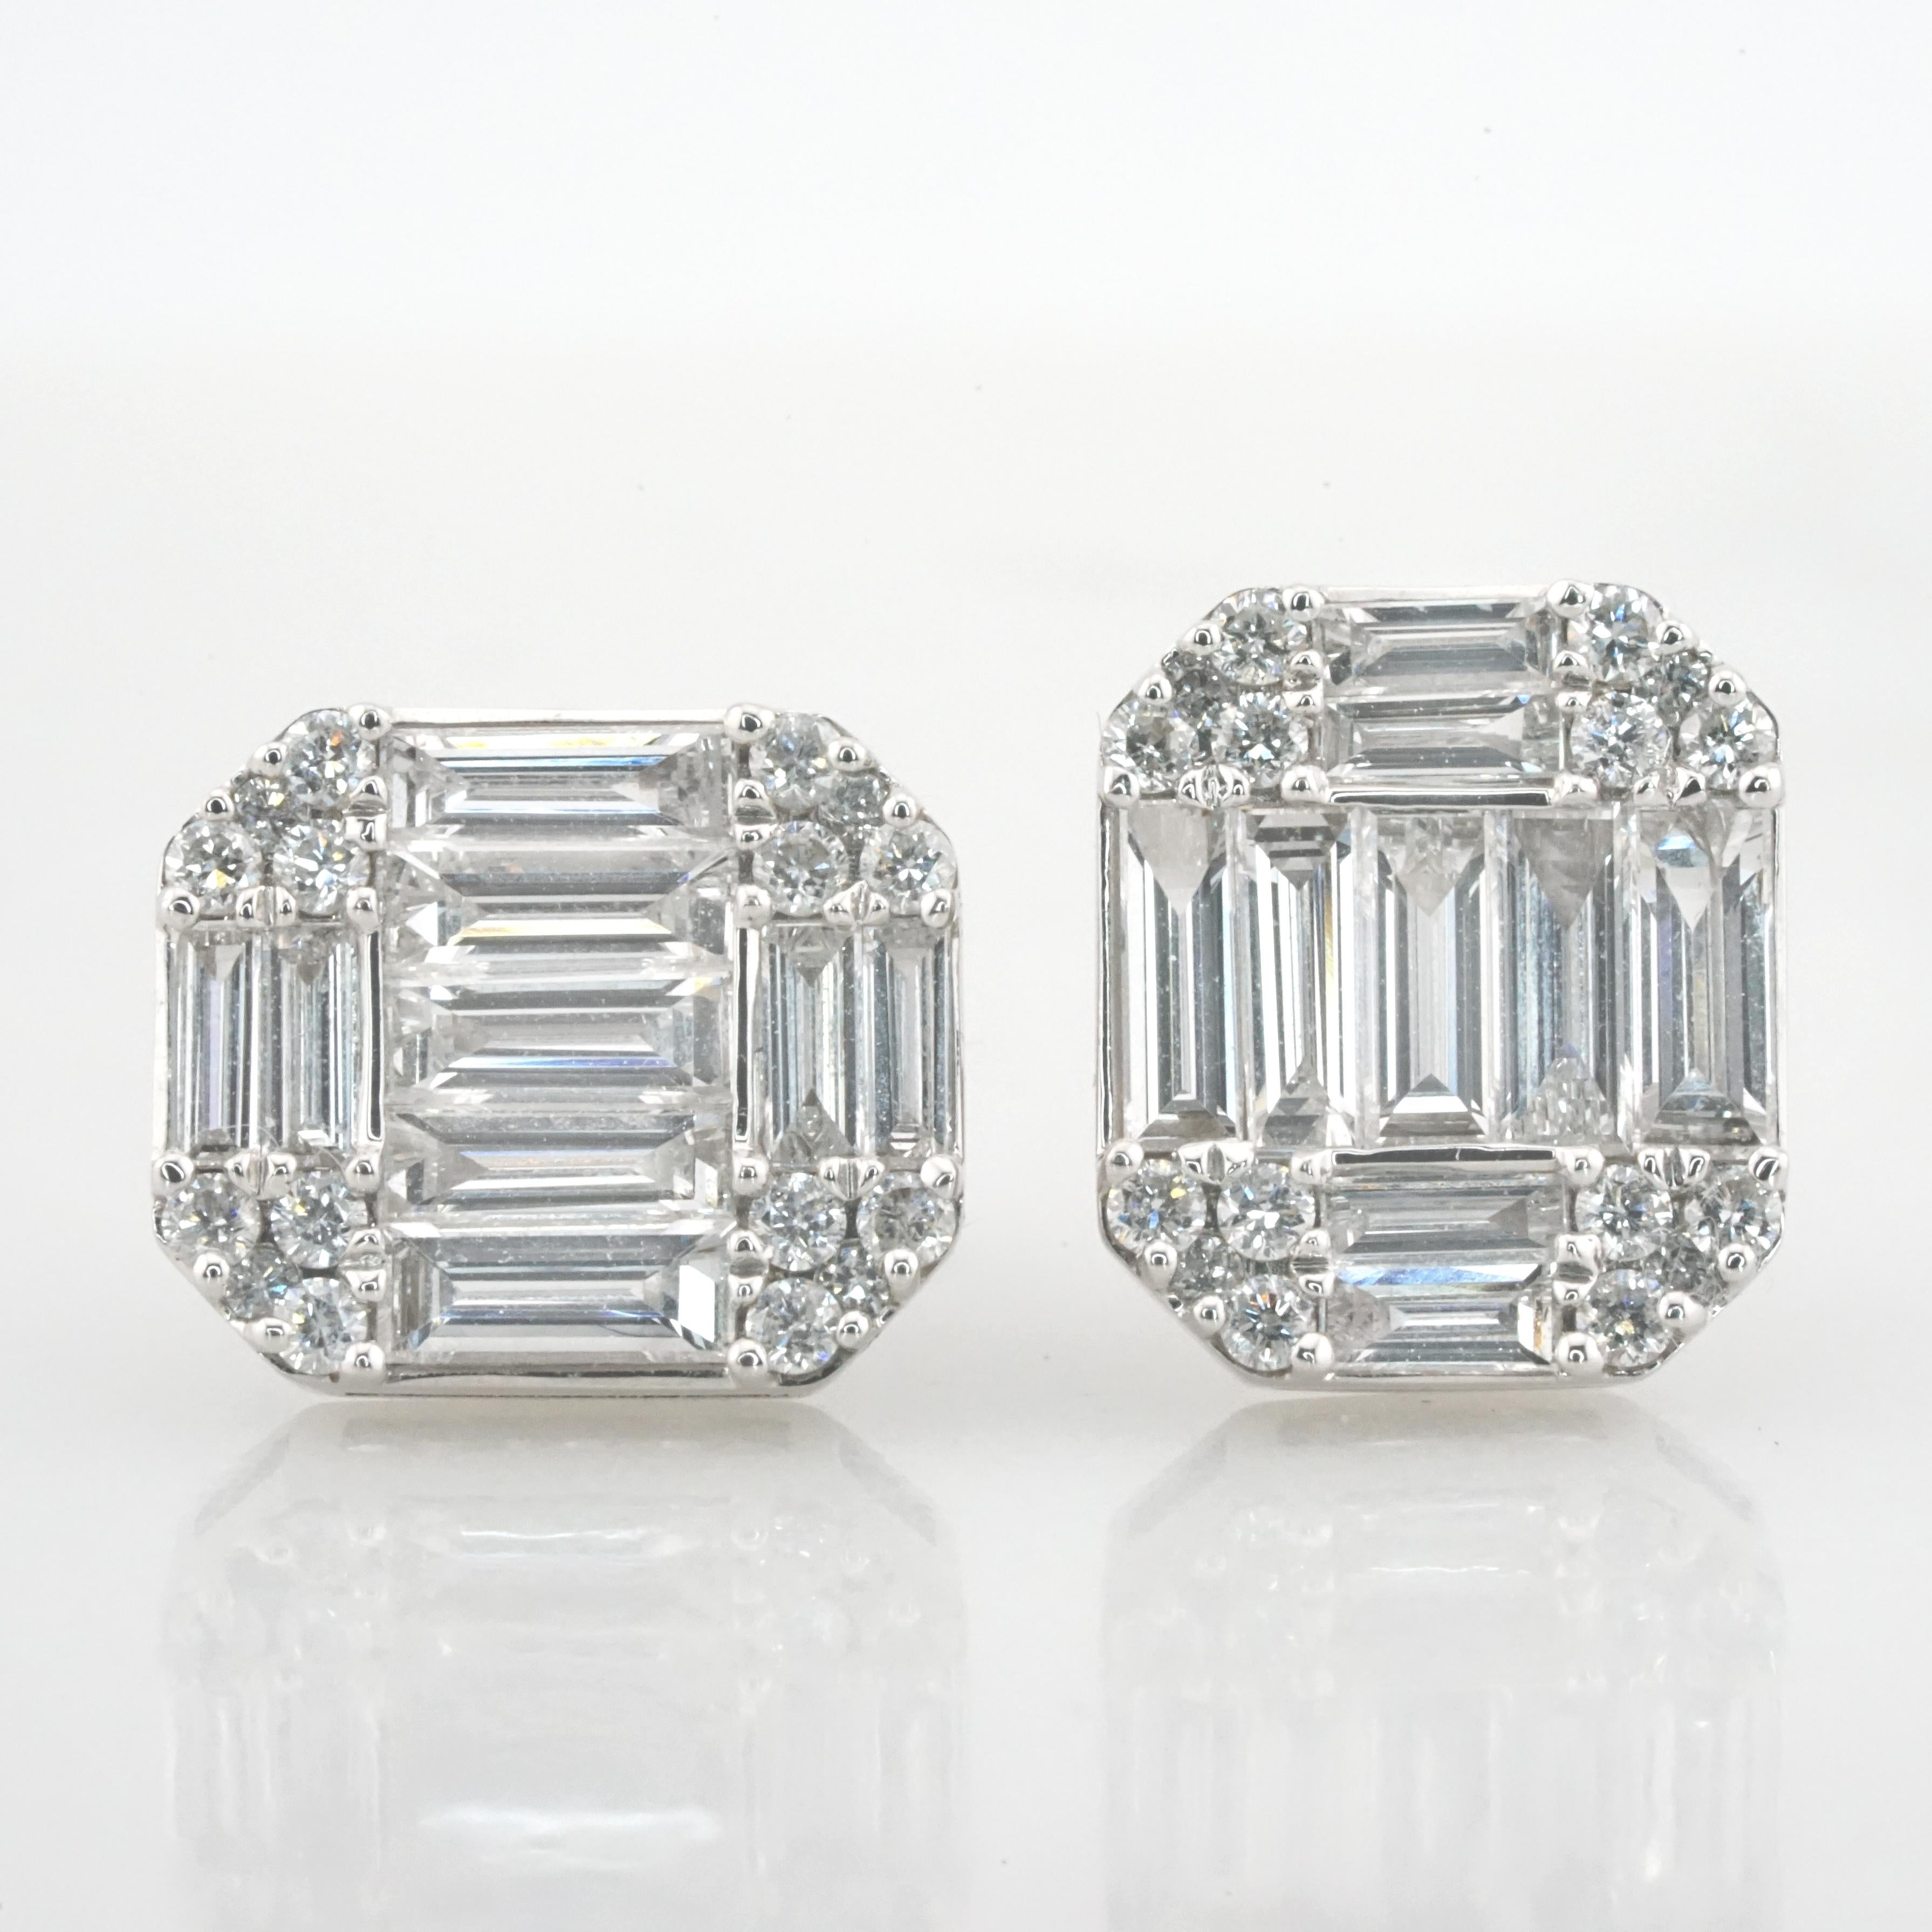 Wir präsentieren ein Paar exquisite Diamant-Ohrstecker mit einem Gesamtgewicht von 1,46 Karat, die von dem renommierten Unternehmen Antinori Di Sanpietro sorgfältig gefertigt wurden. Diese Ohrringe aus glänzendem 18-karätigem Weißgold sind mit